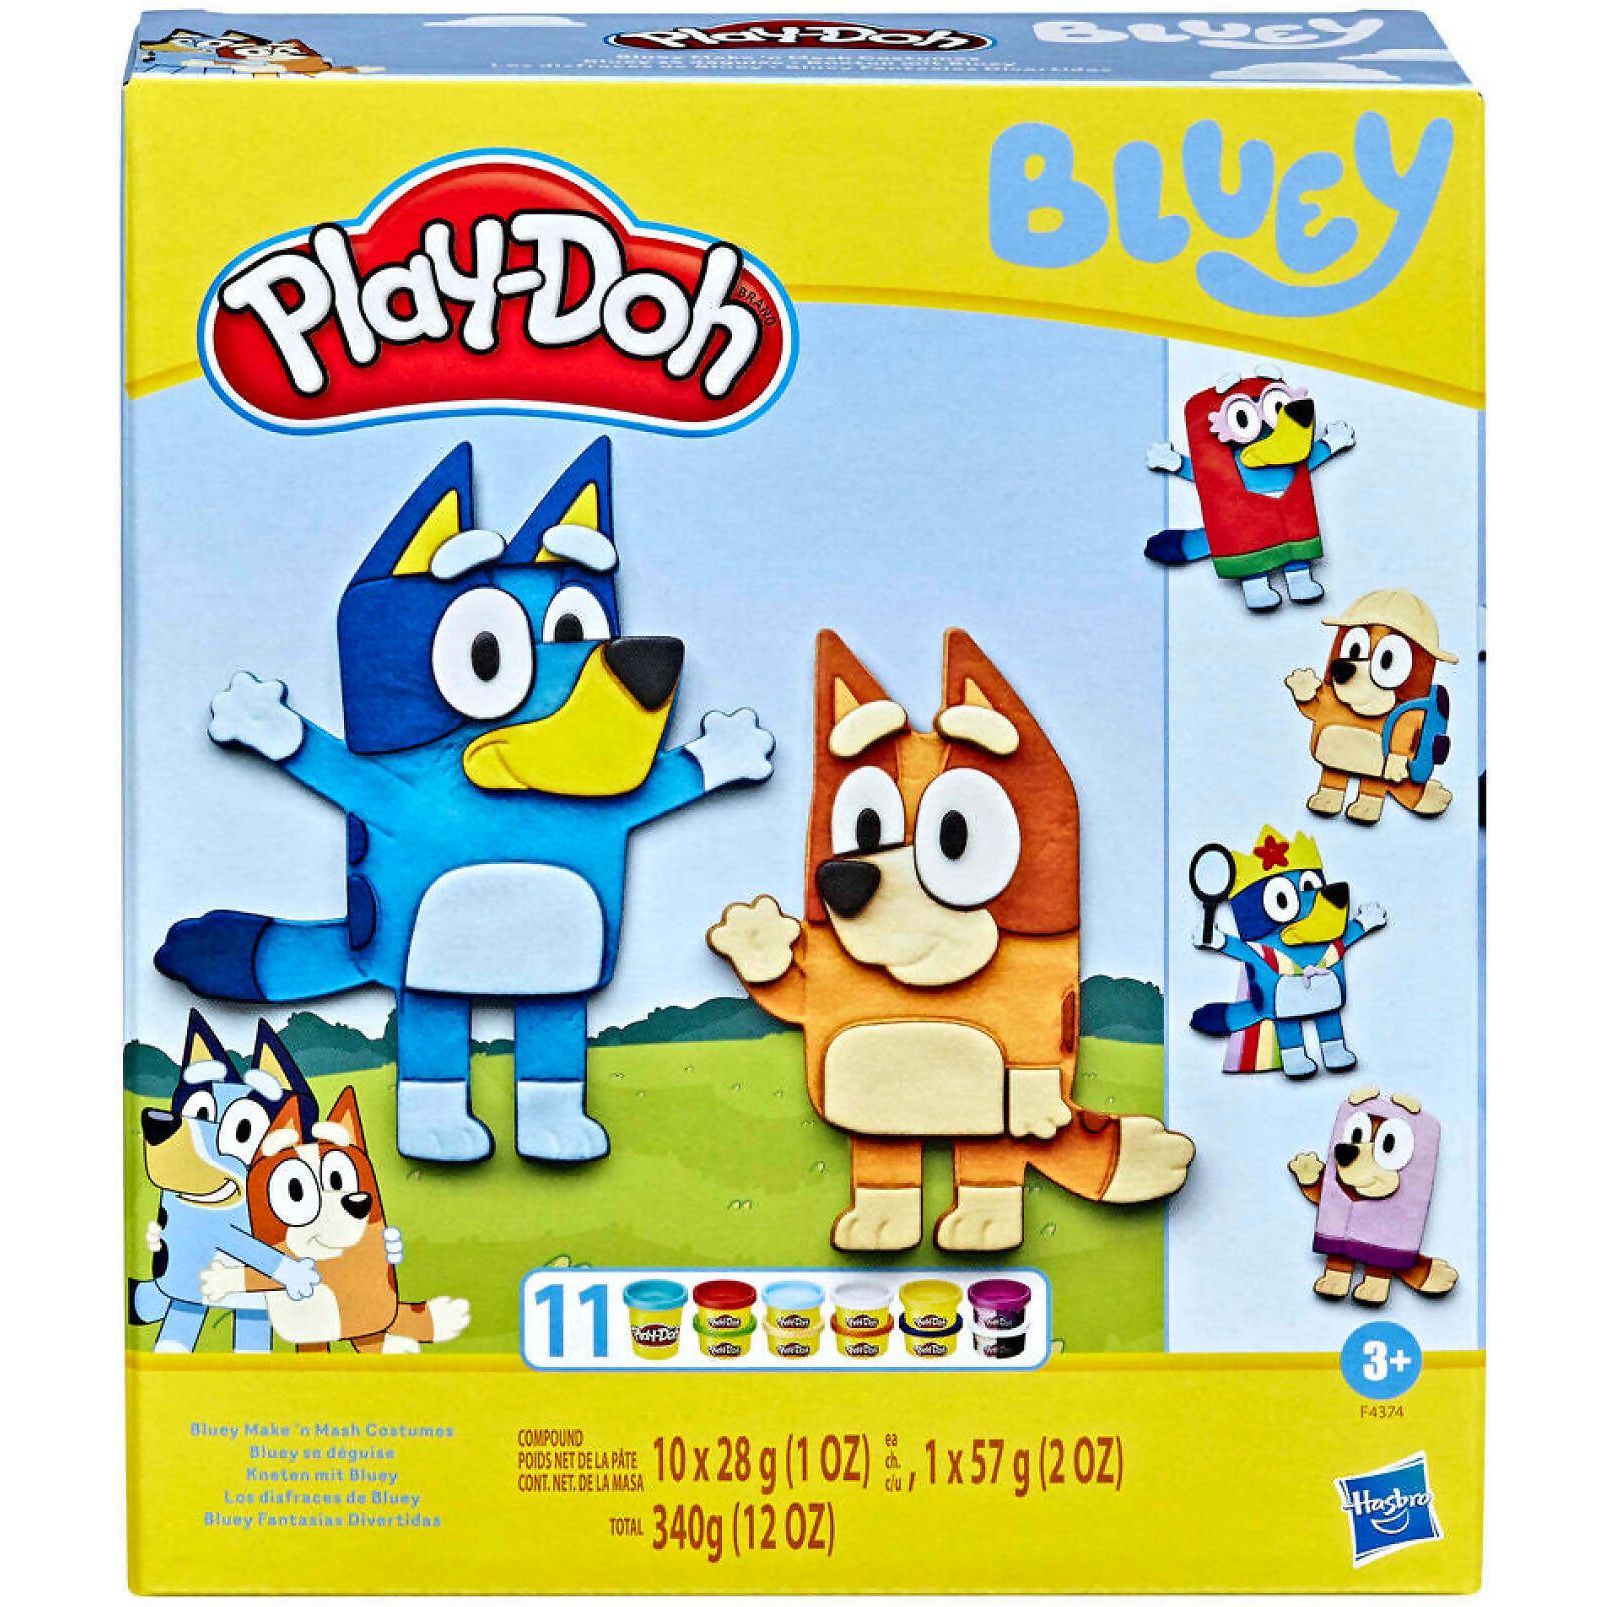 Набор Play-Doh Bluey Make N Mash Costumes игровой, для лепки, F43745L0 набор для опытов создай свой бальзам для губ make up в пакете